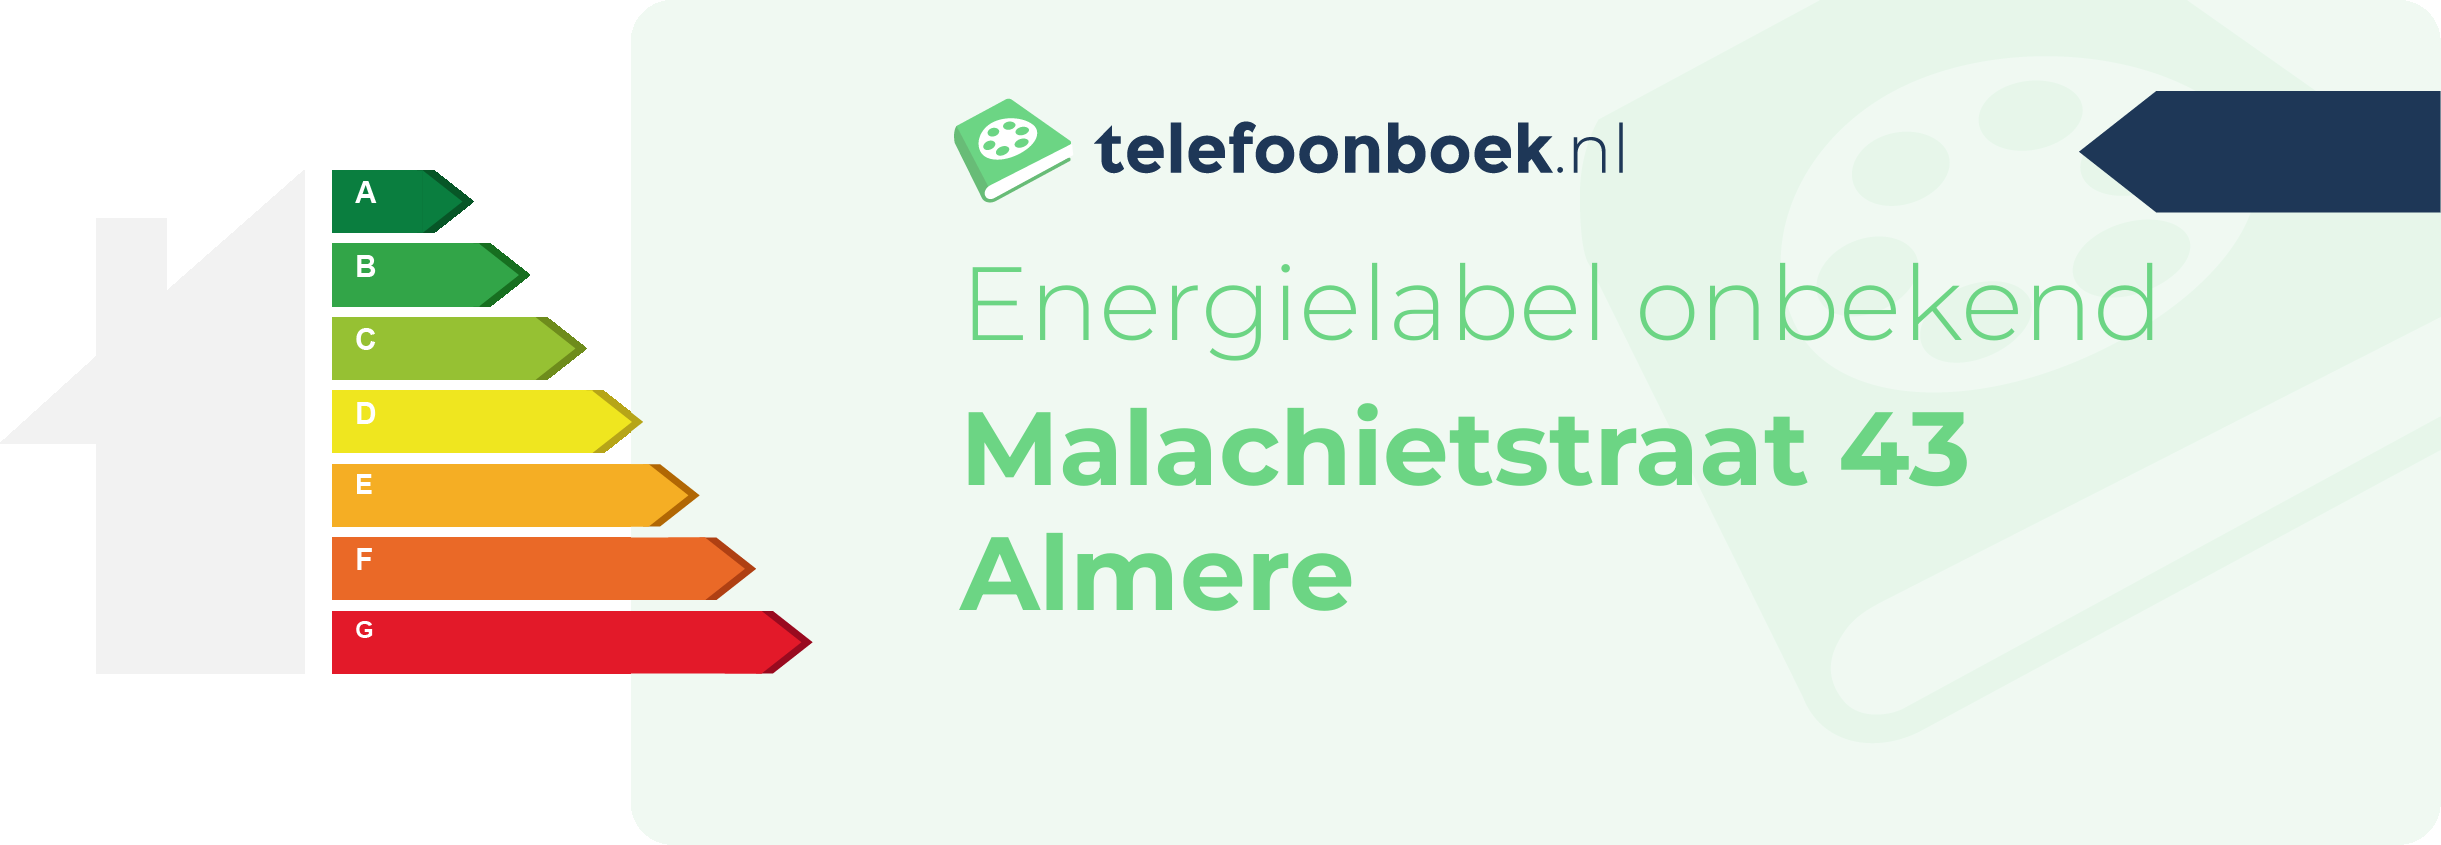 Energielabel Malachietstraat 43 Almere